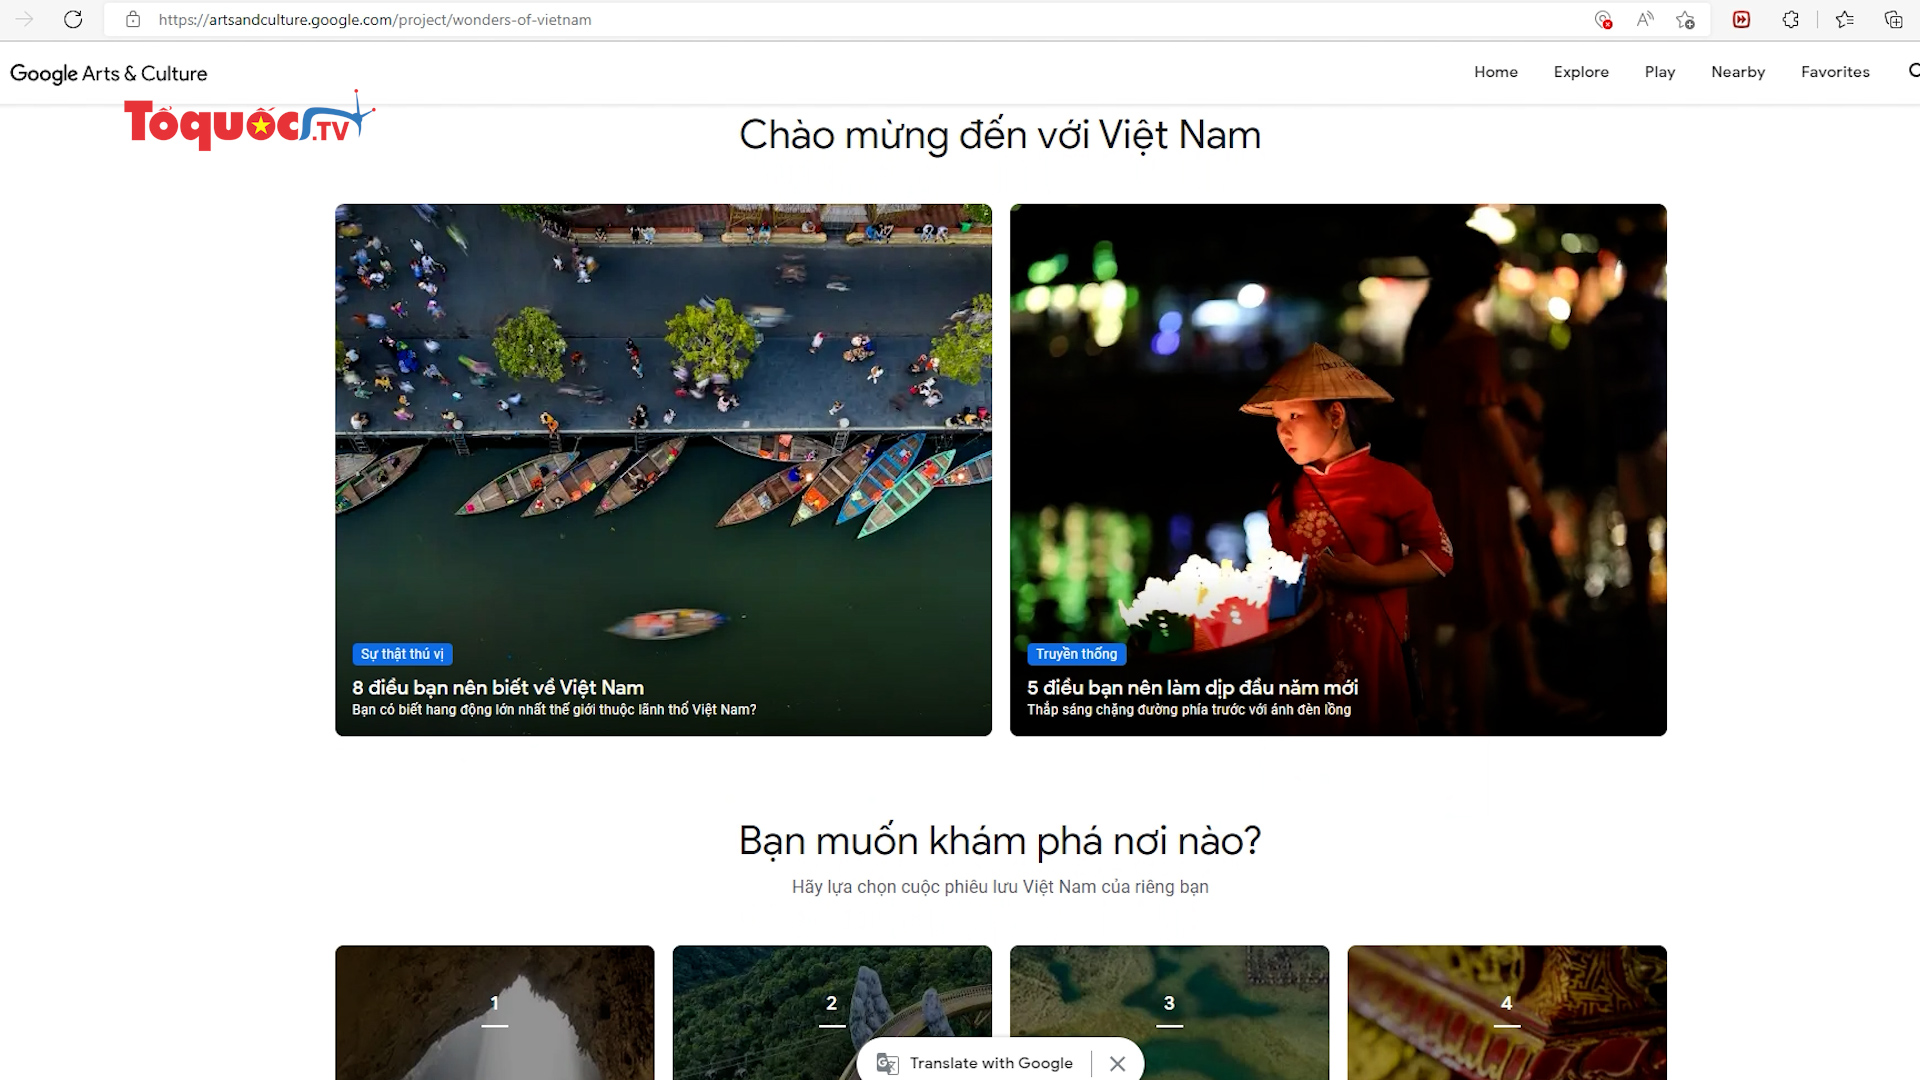 Đưa văn hóa Việt Nam ra thế giới qua nền tảng Google Arts & Culture